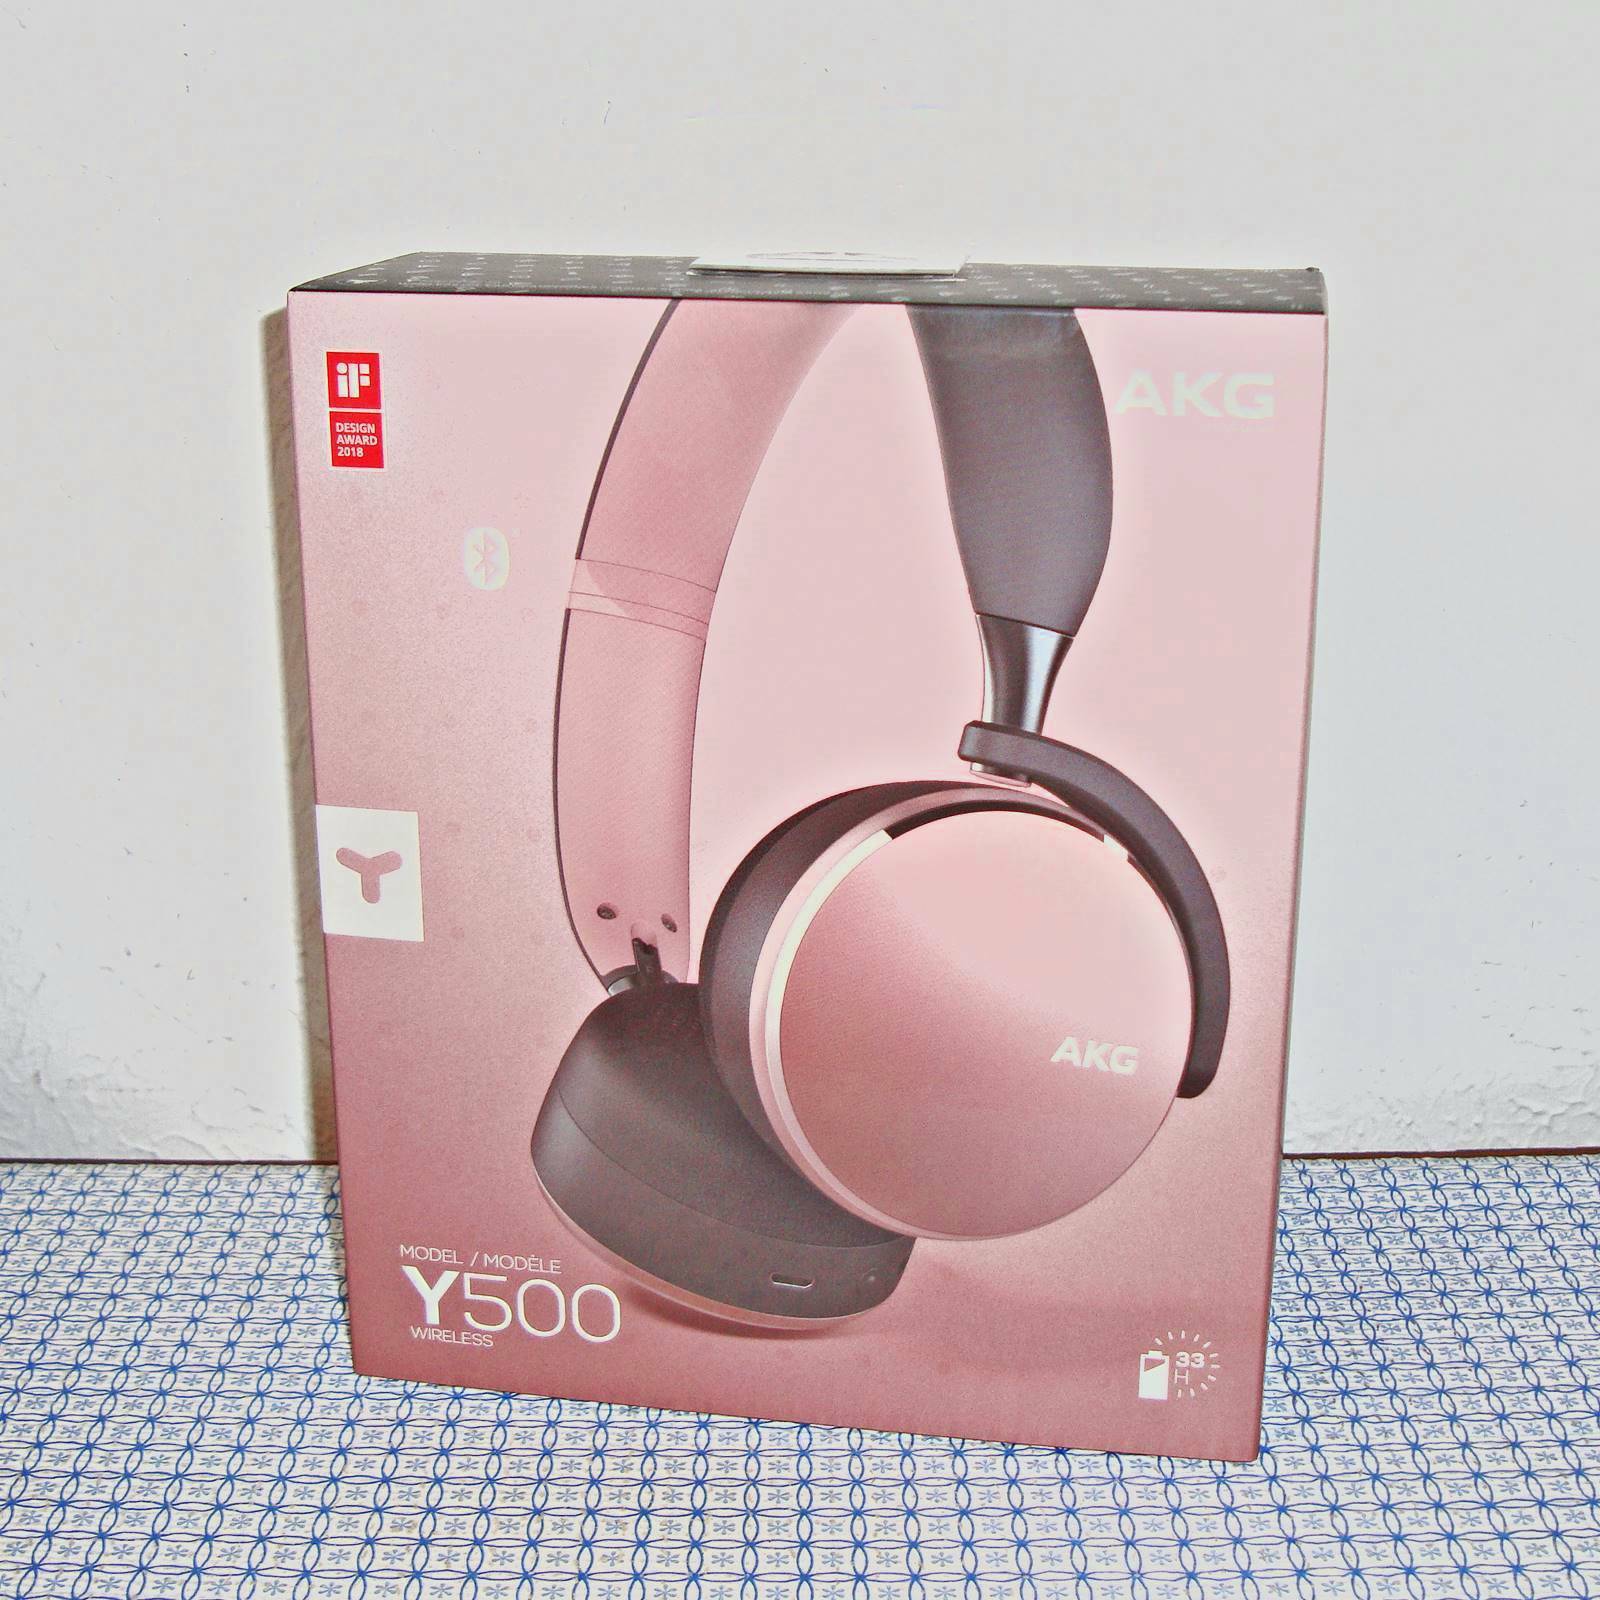 onwettig Simuleren Nietje NEW AKG Y500 WIRELESS ON-EAR FOLDABLE HEADPHONES (AKGY500BT) | eBay